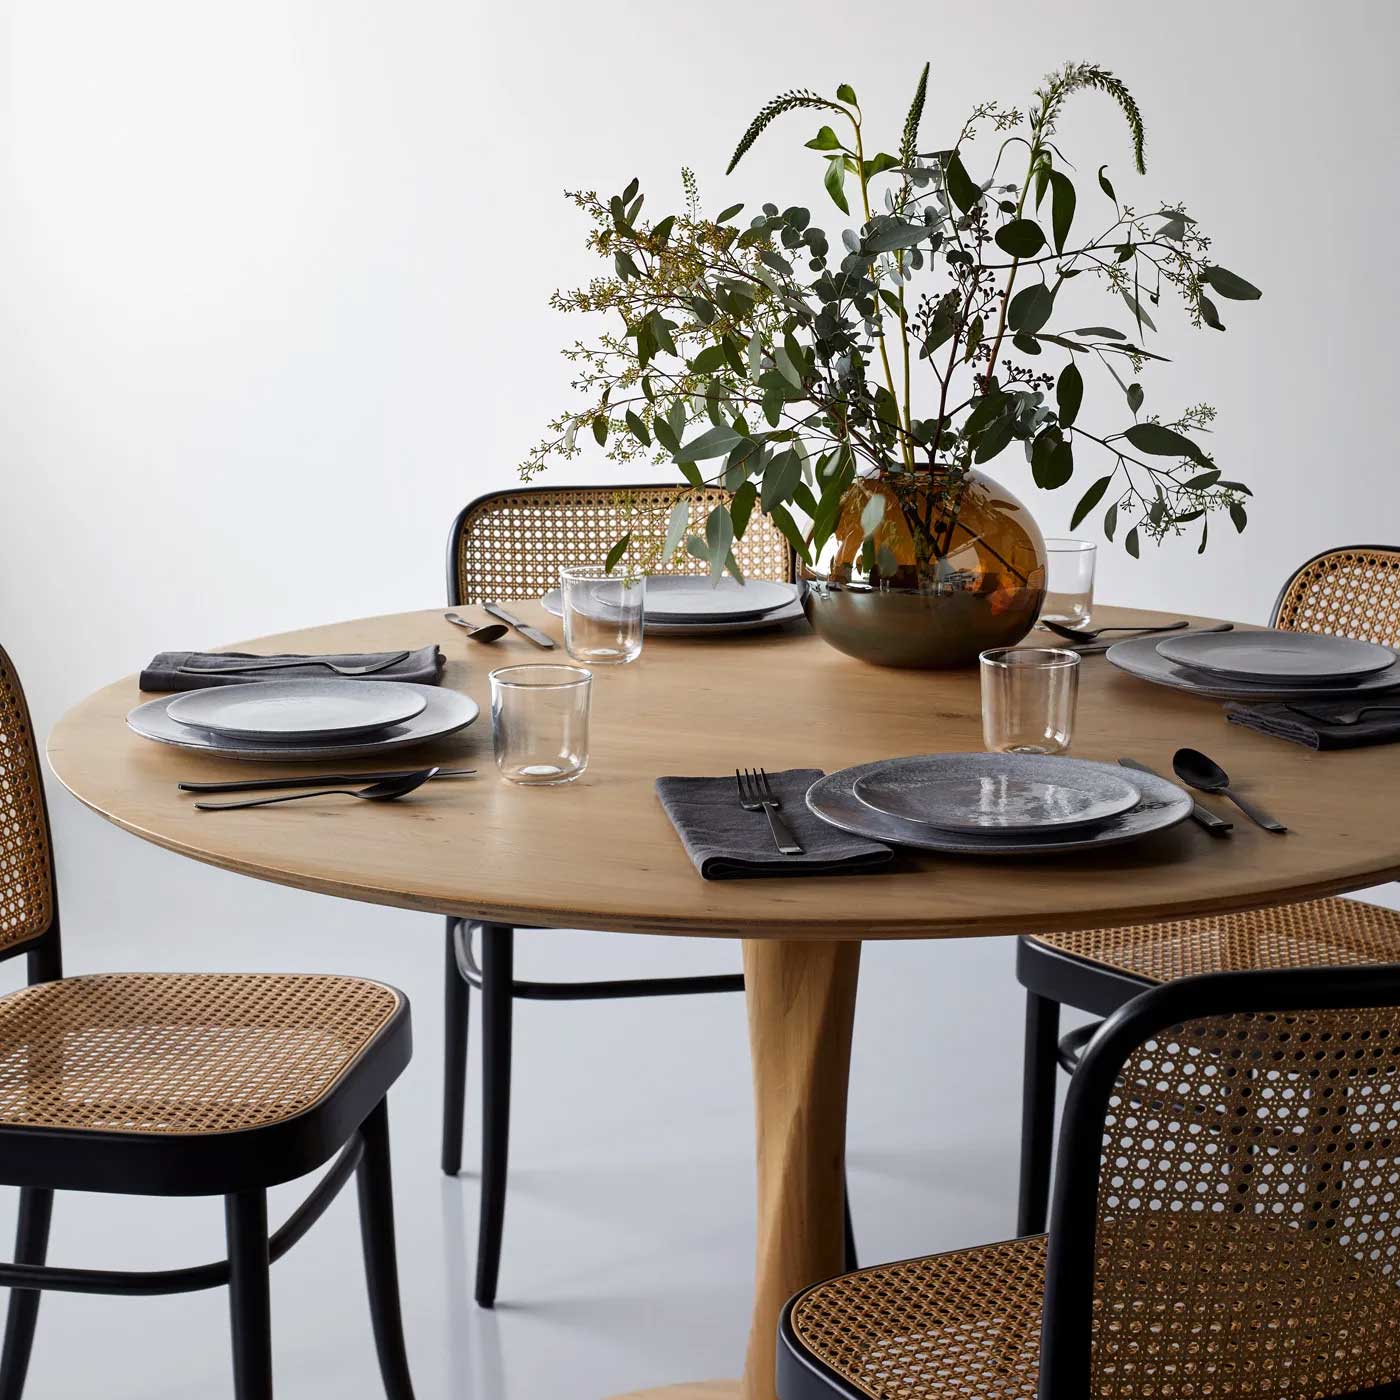 Bộ bàn ăn 6 ghế gỗ sồi (Oak) mang phong cách tân tiến, hiện đại